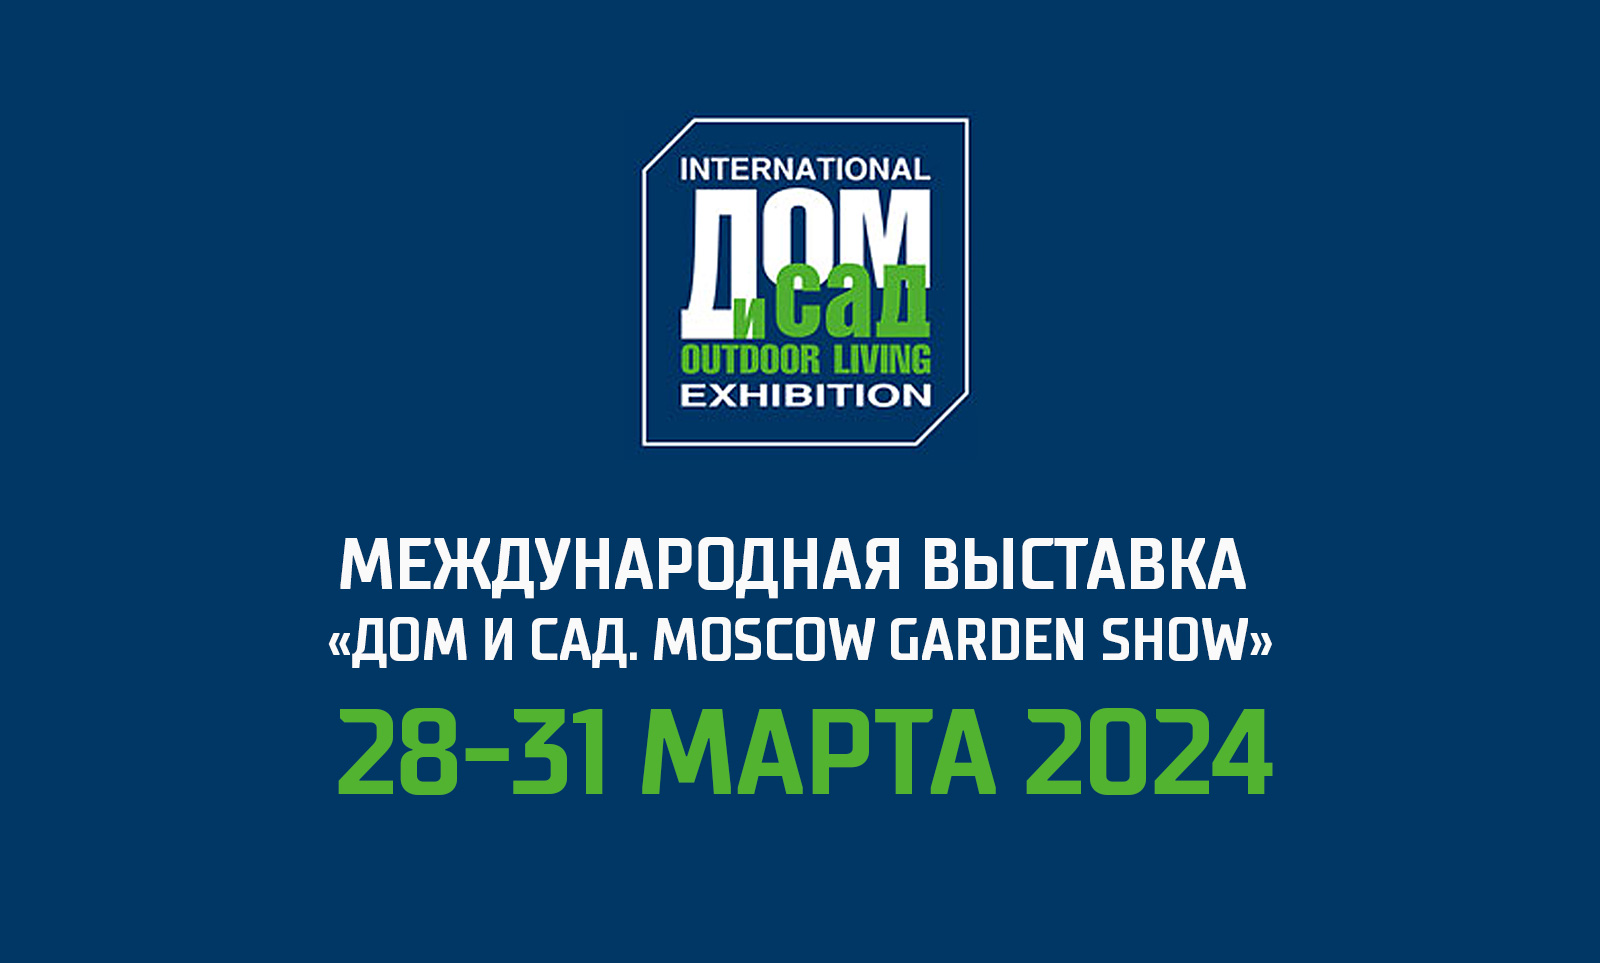 Приглашаем на выставку! «Дом и Сад. Moscow Garden Show 2024», МВЦ «Крокус ЭКСПО»